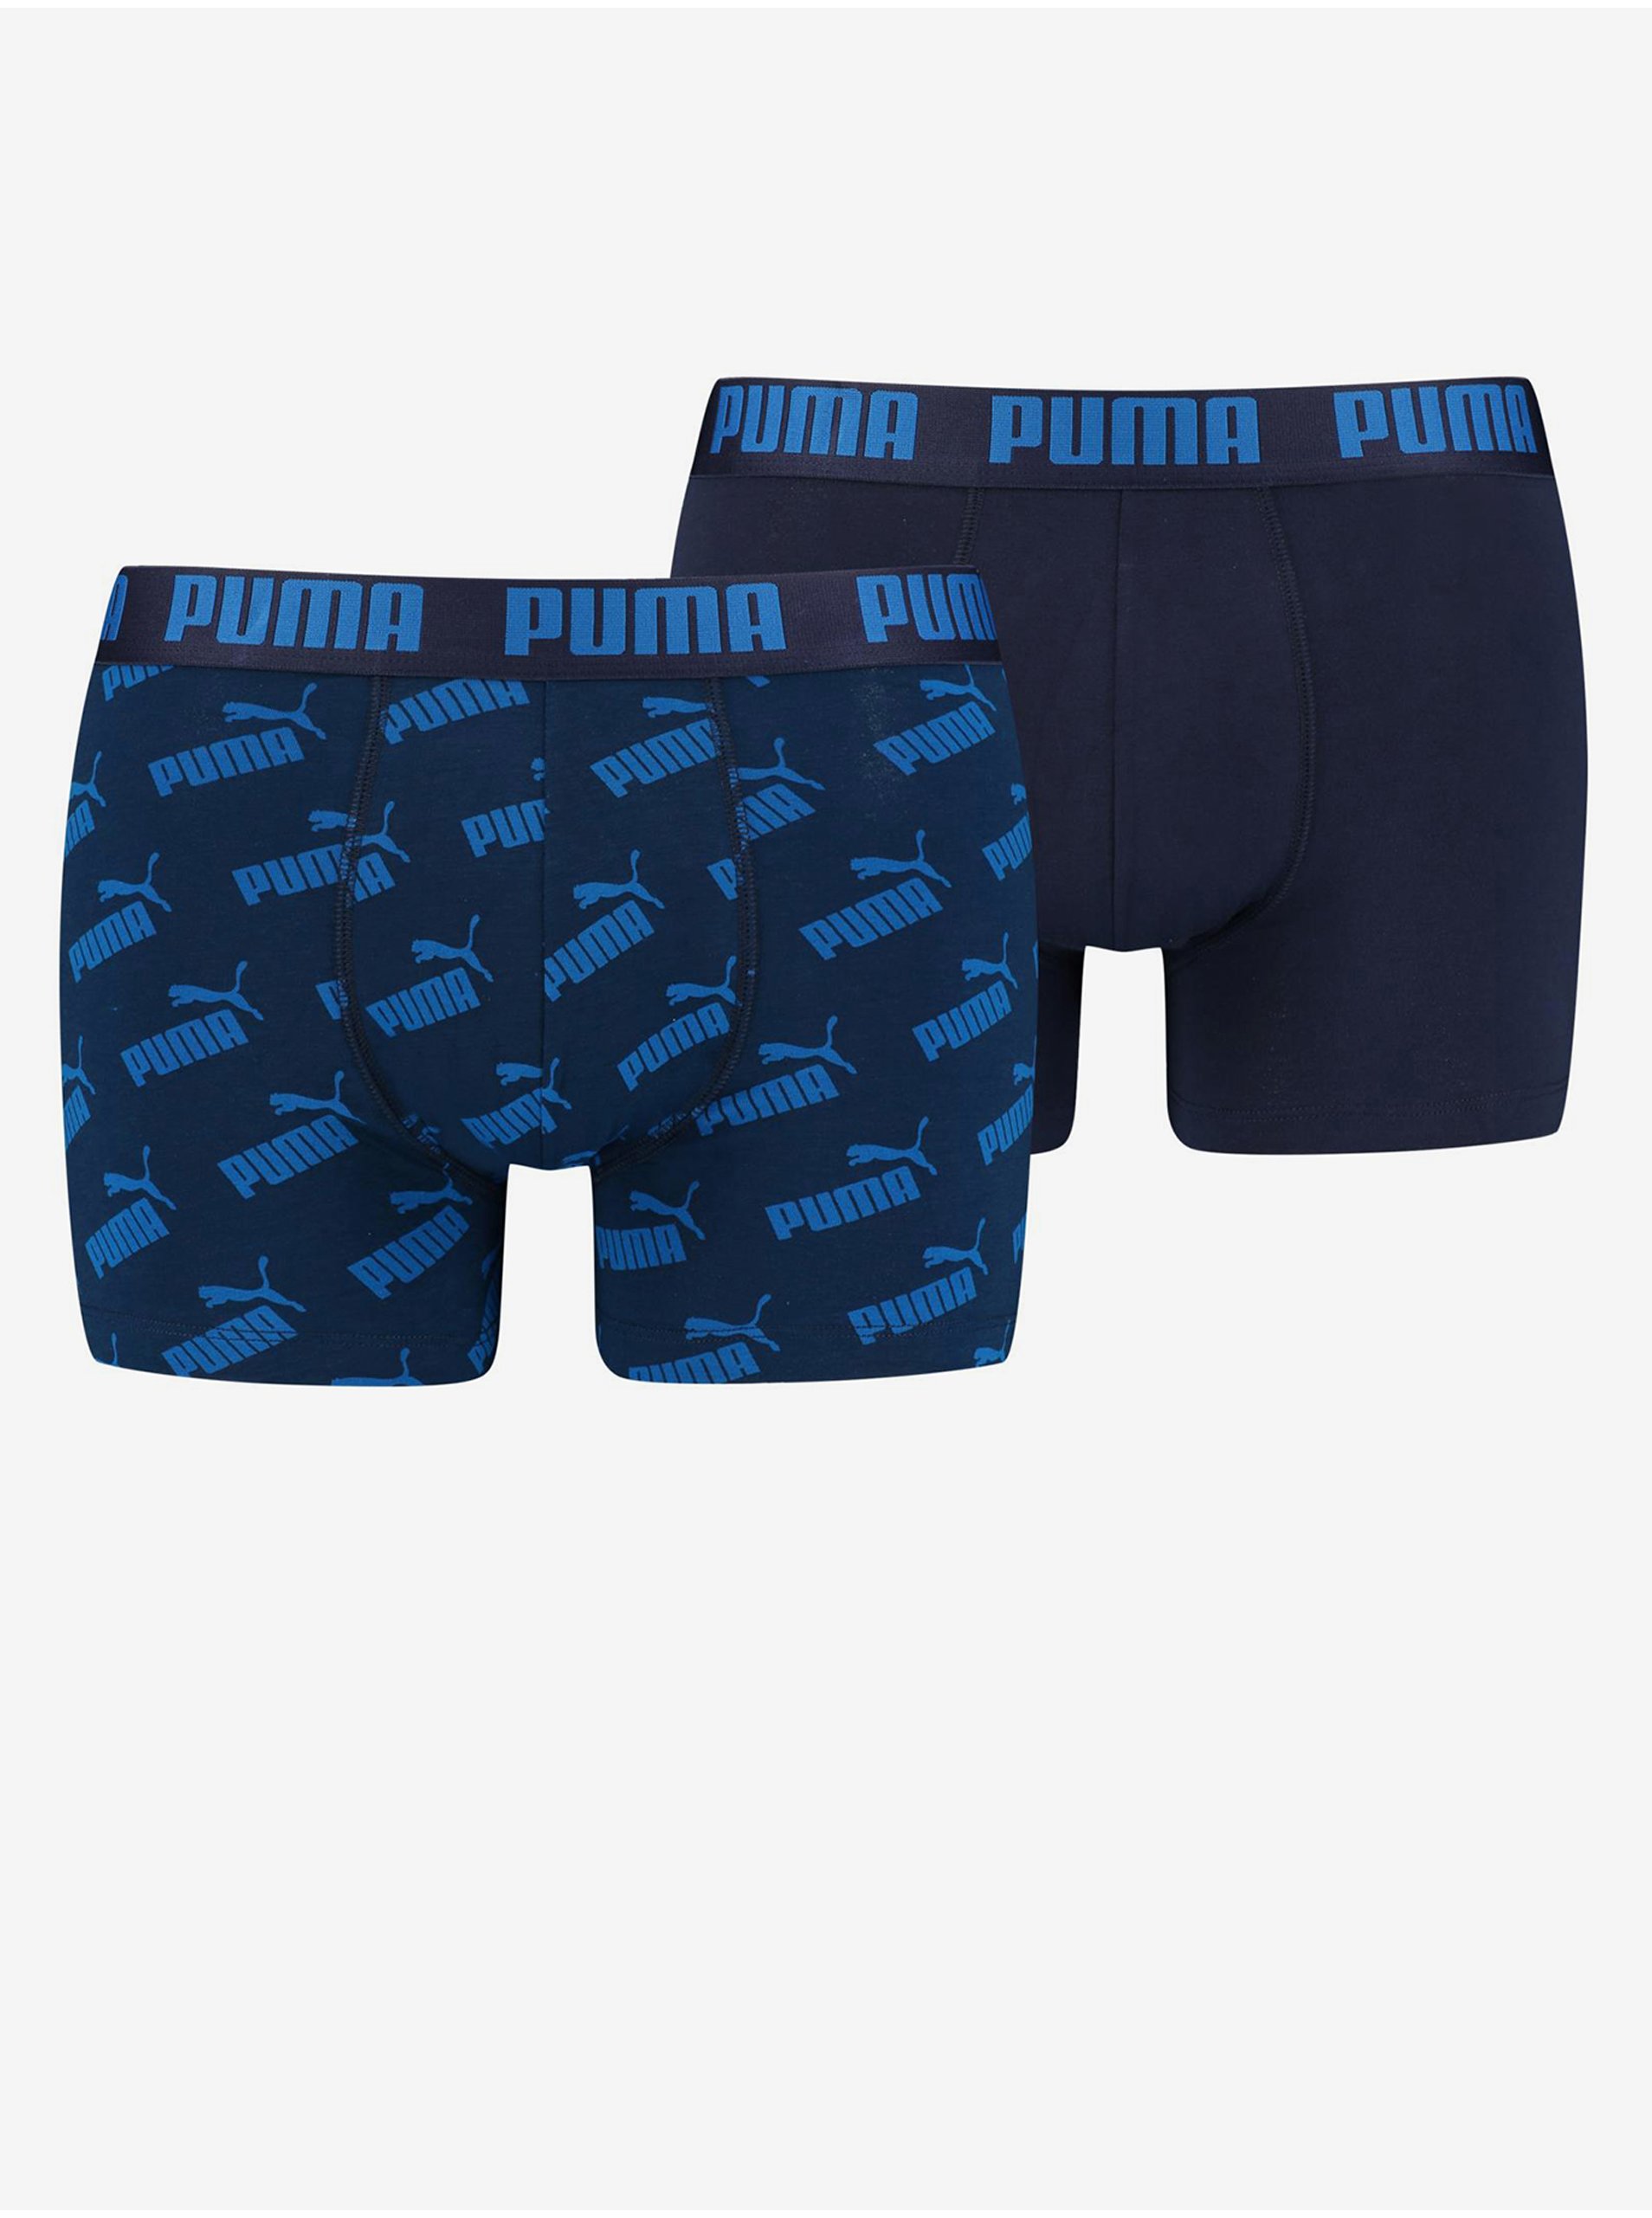 E-shop Sada dvoch párov pánskych boxerok v tmavomodrej farbe Puma